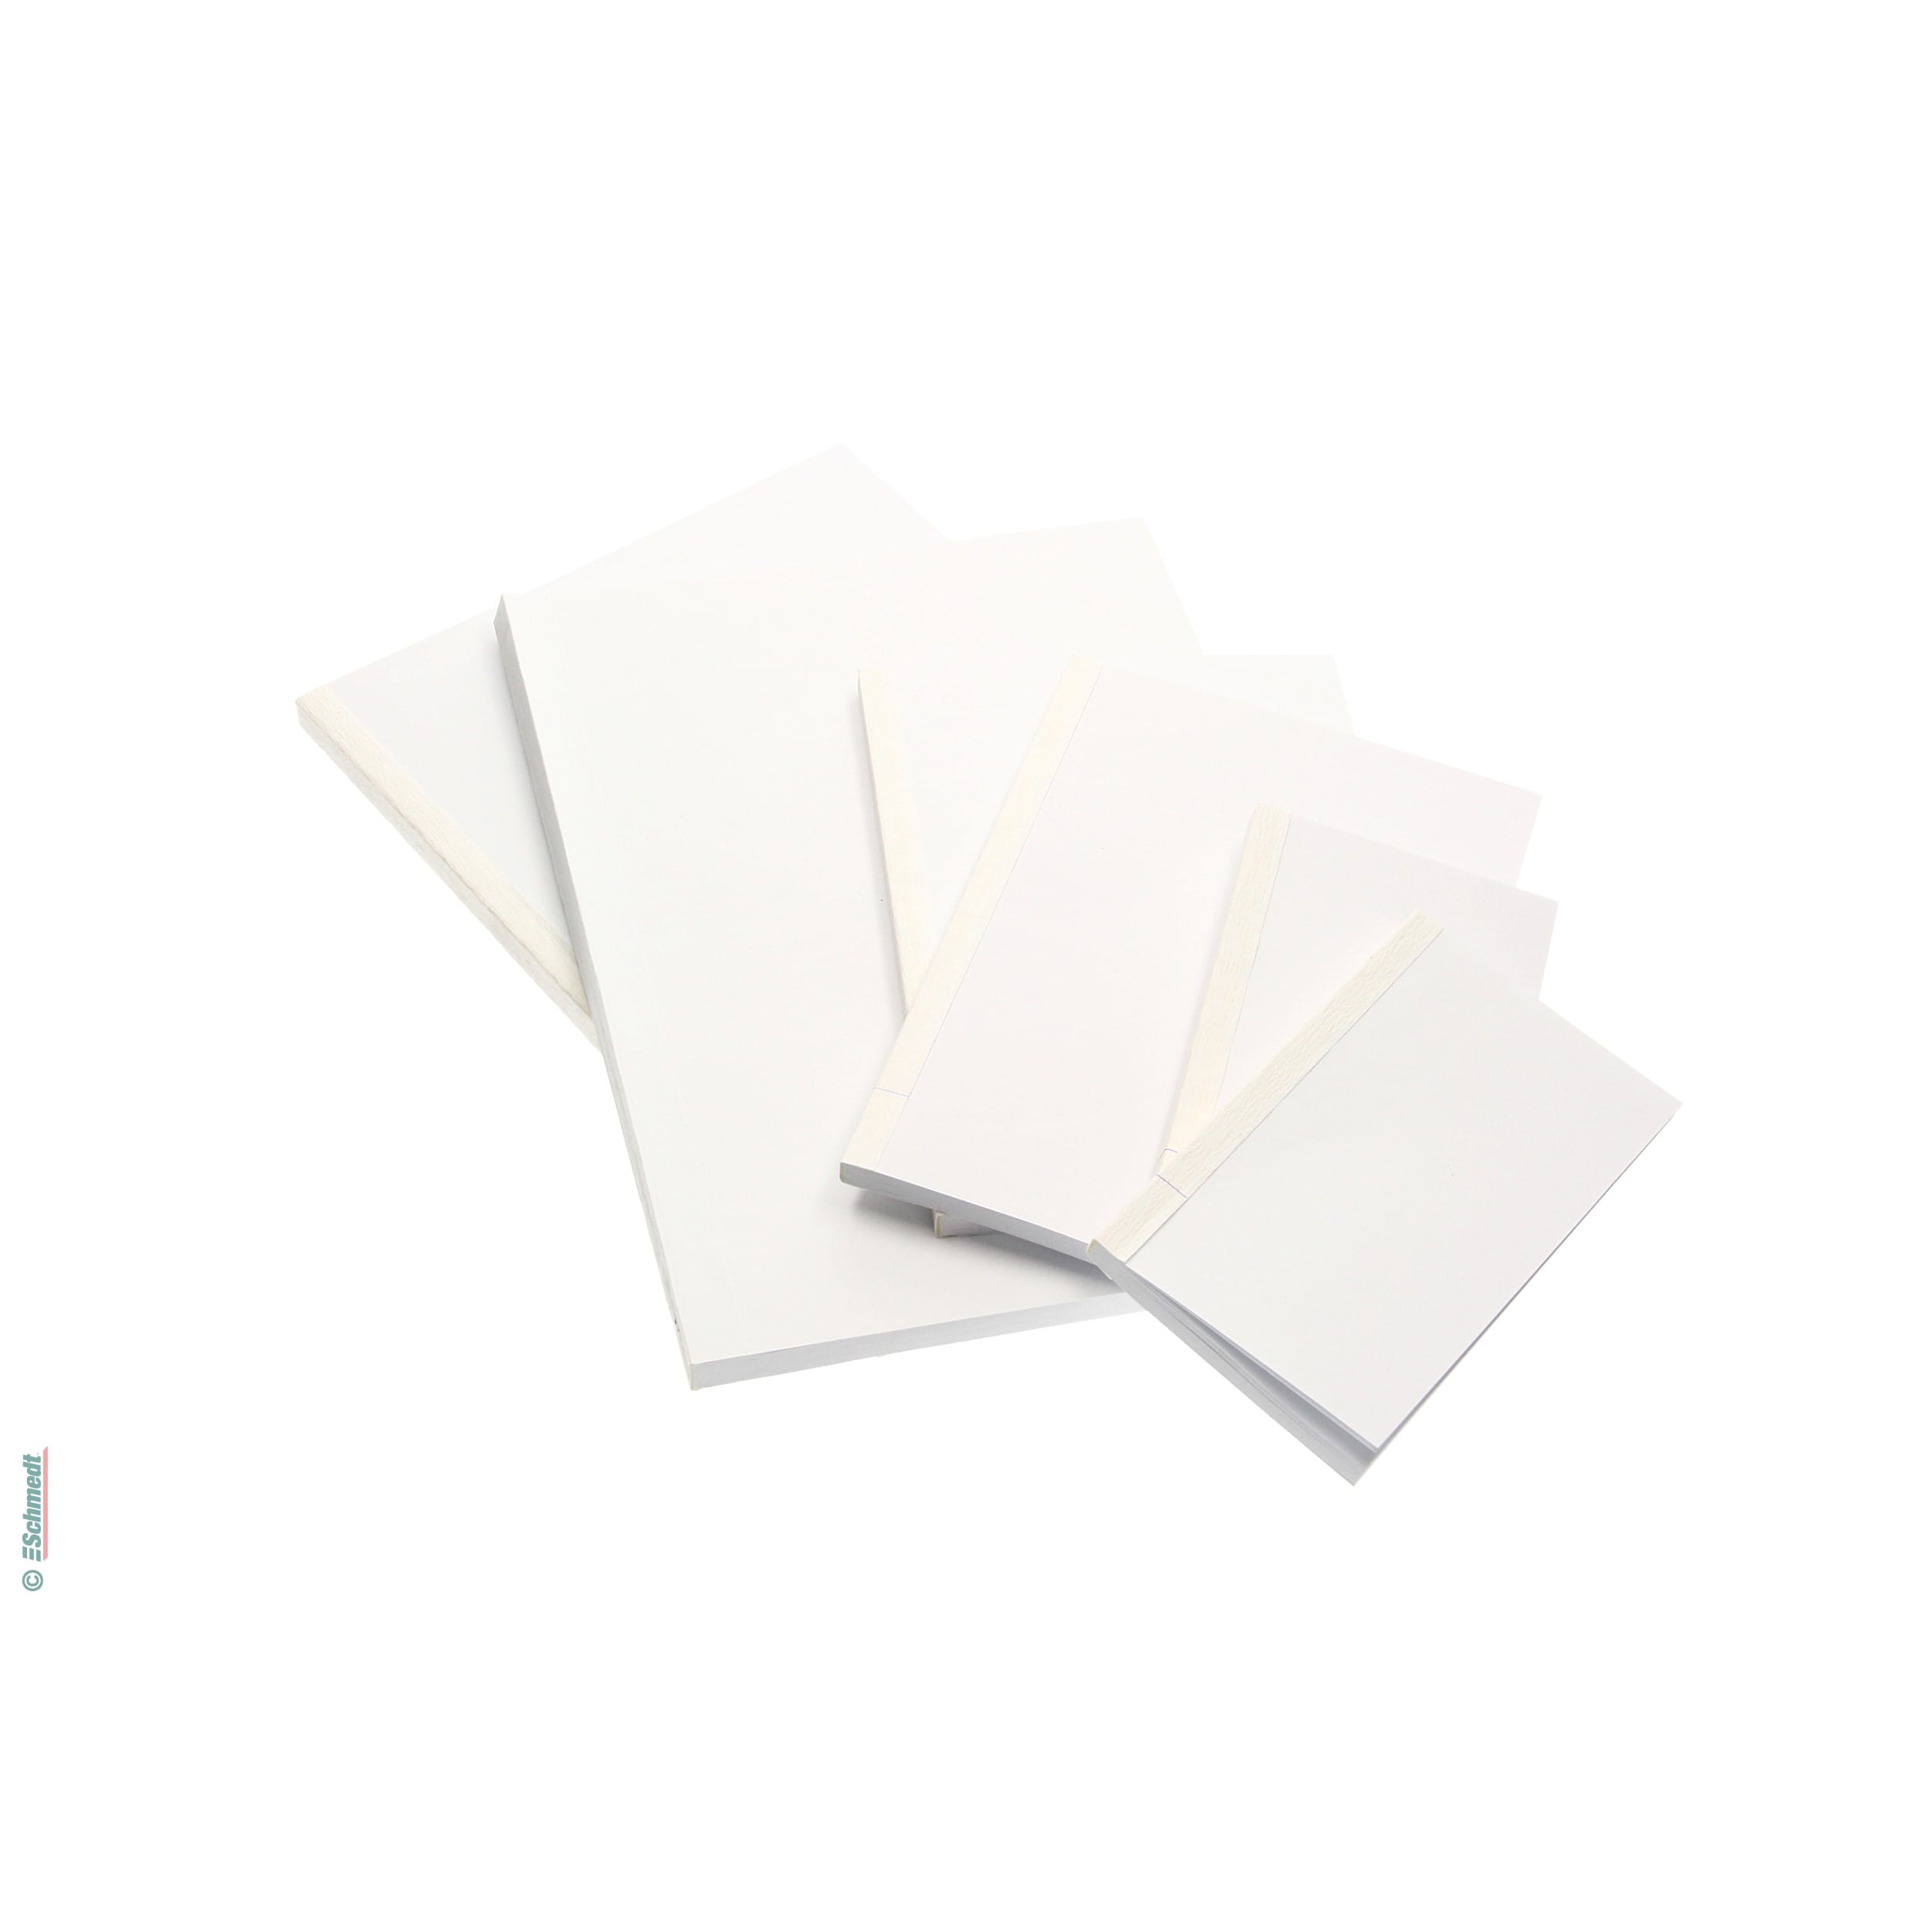  Cortador de papel A4, recortadora de papel resistente de corte  rápido y preciso, herramienta de álbum de recortes y tabla de cortar de  papel para papel, etiquetas y cartulina : Productos